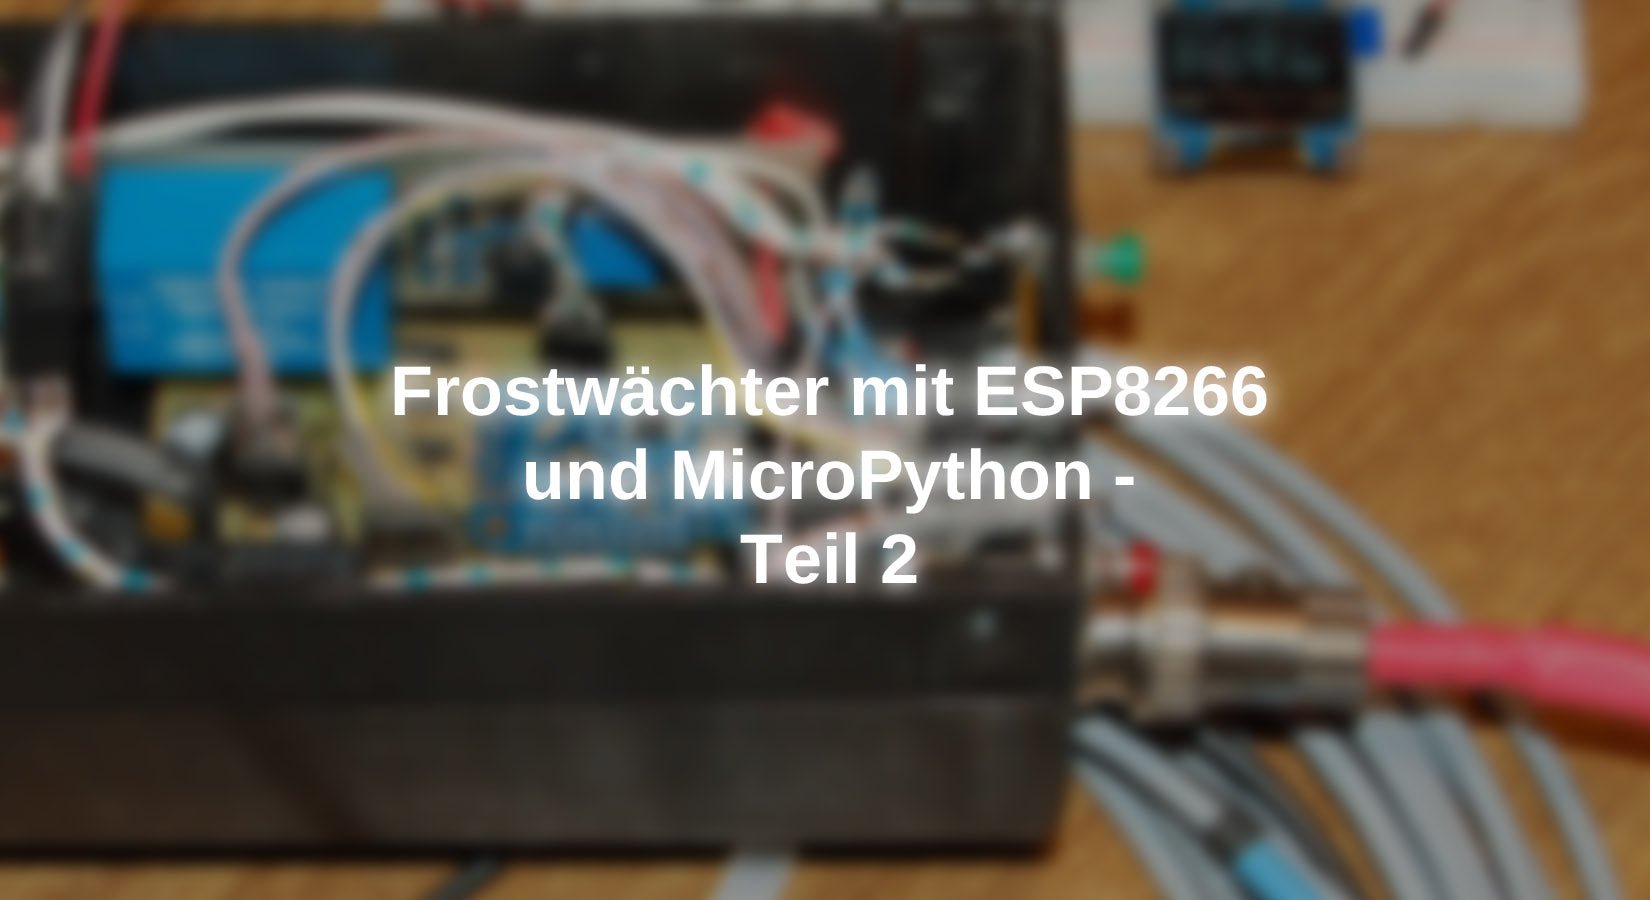 Frostwächter mit ESP8266 und MicroPython - Teil 2 - AZ-Delivery